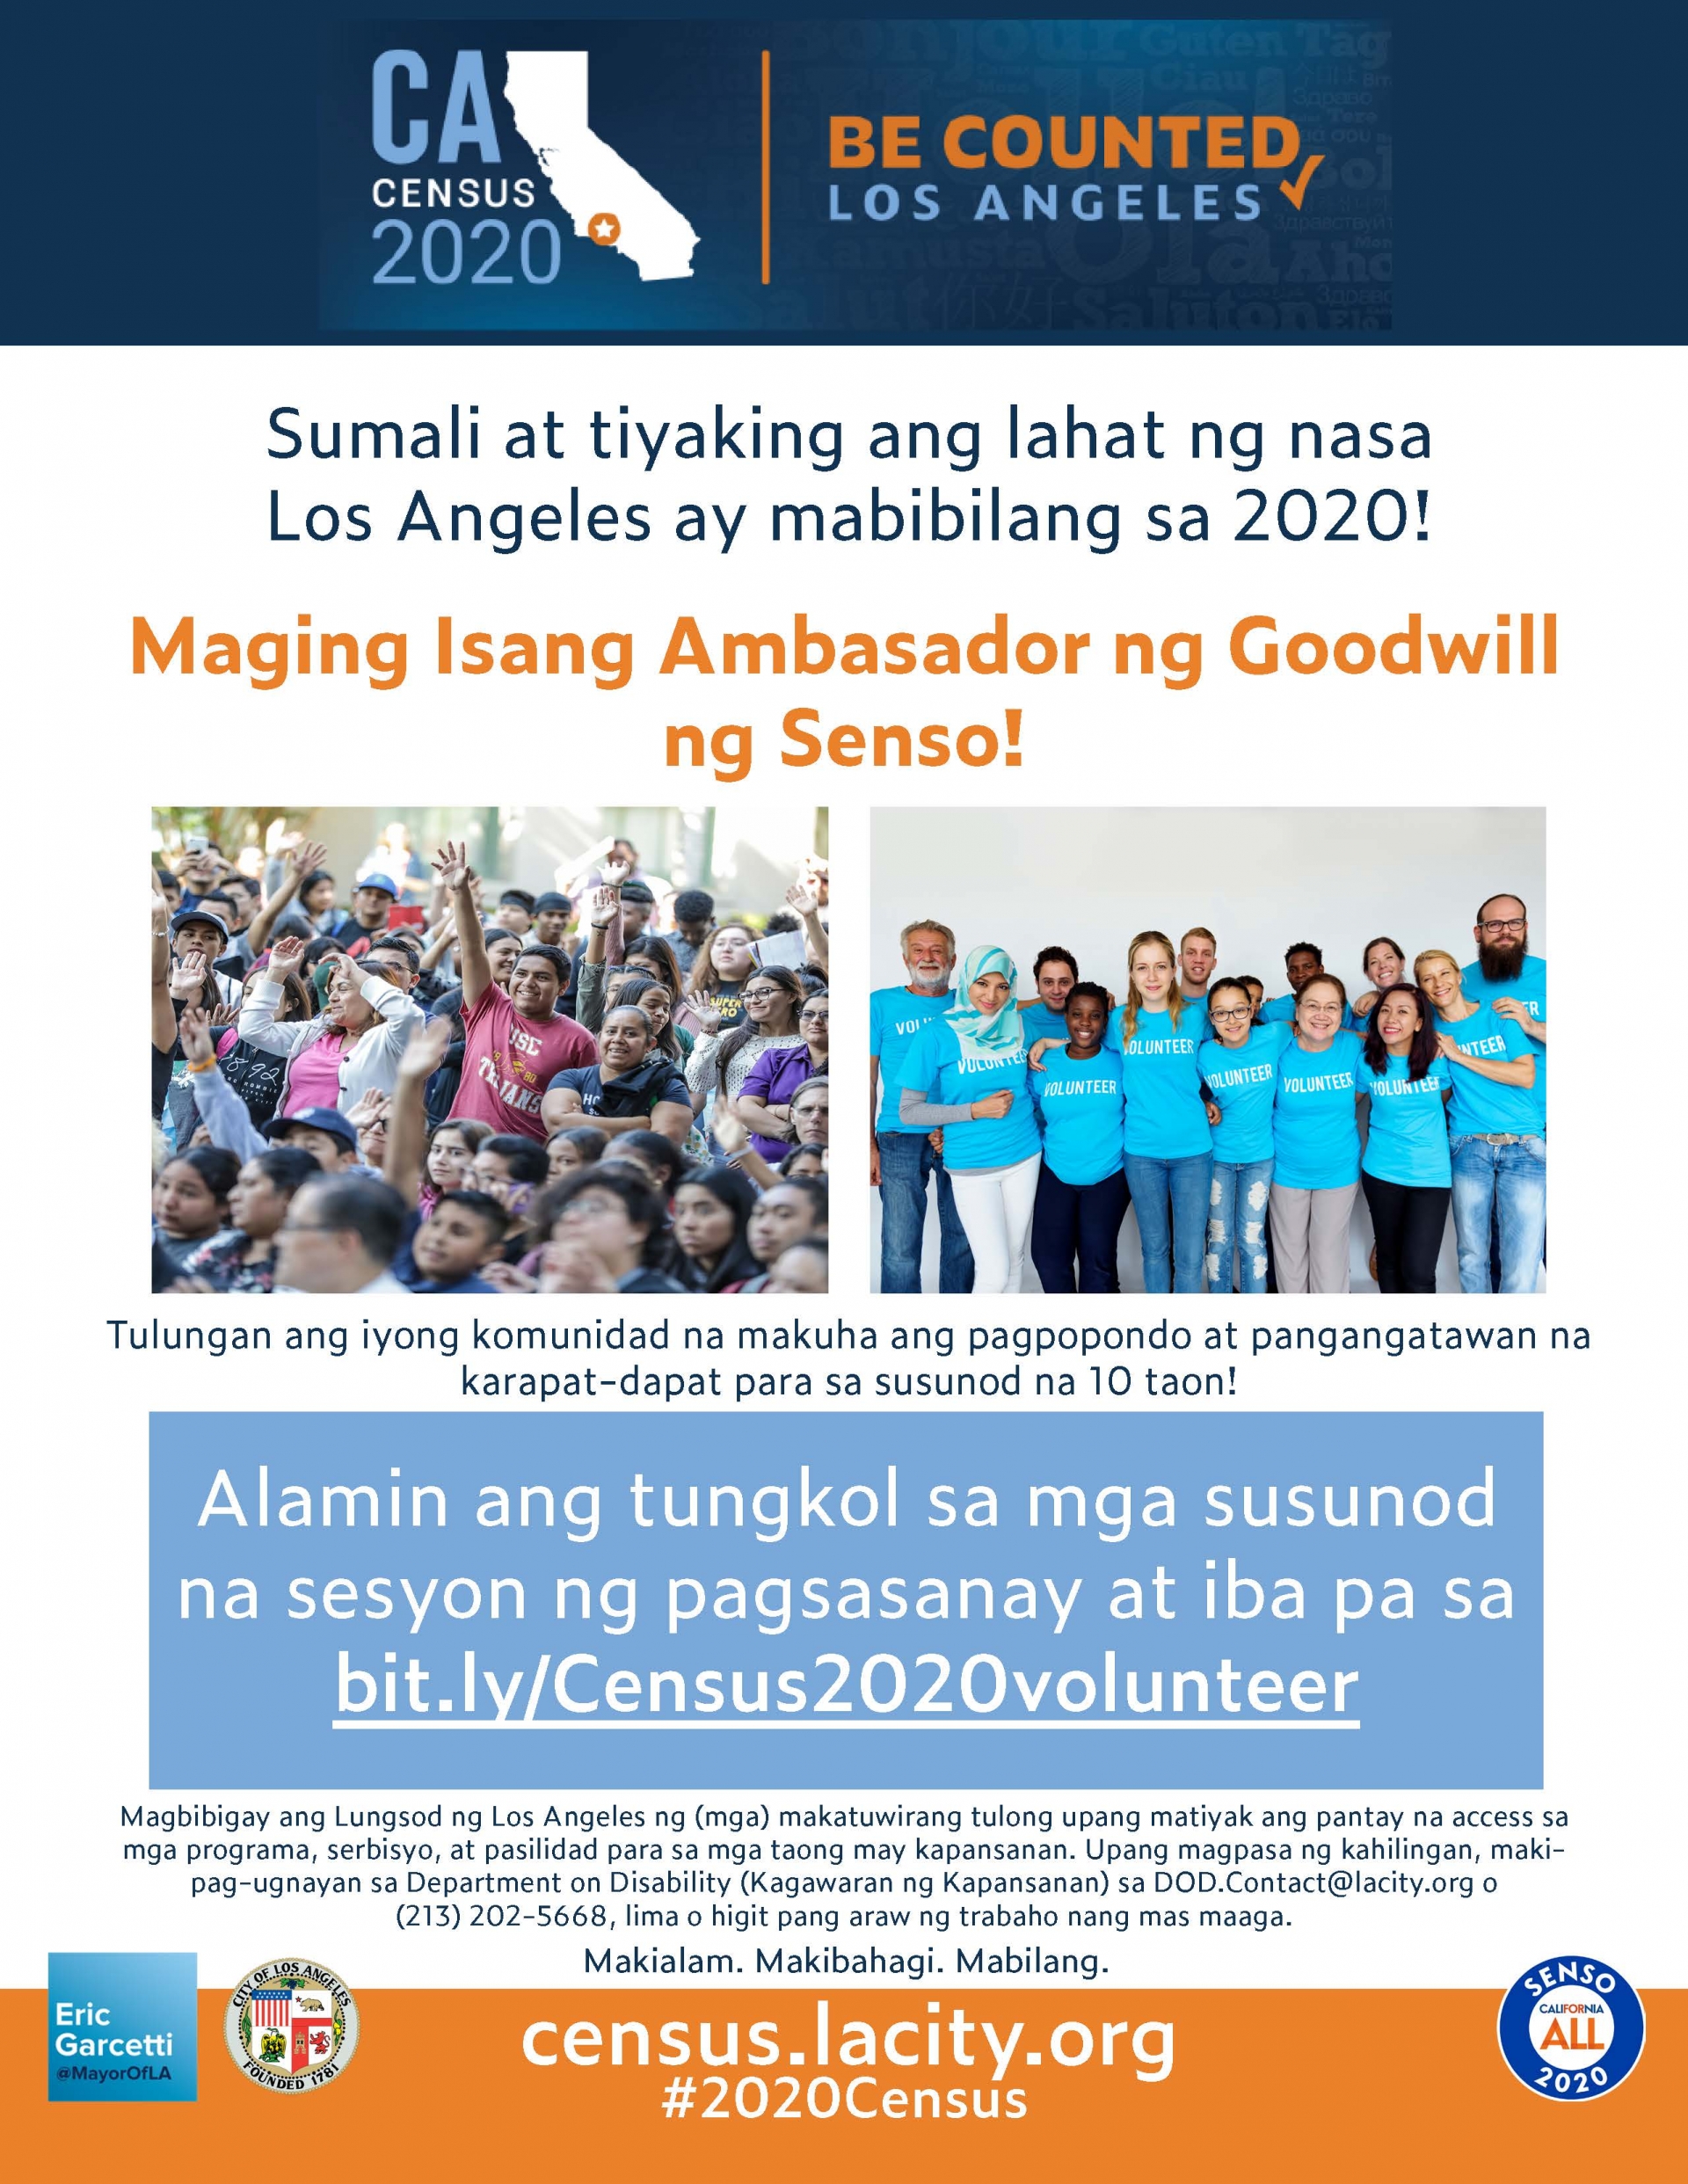 Programang Embahador para sa Pagtataguyod ng Senso (Census Goodwill Ambassador Program).